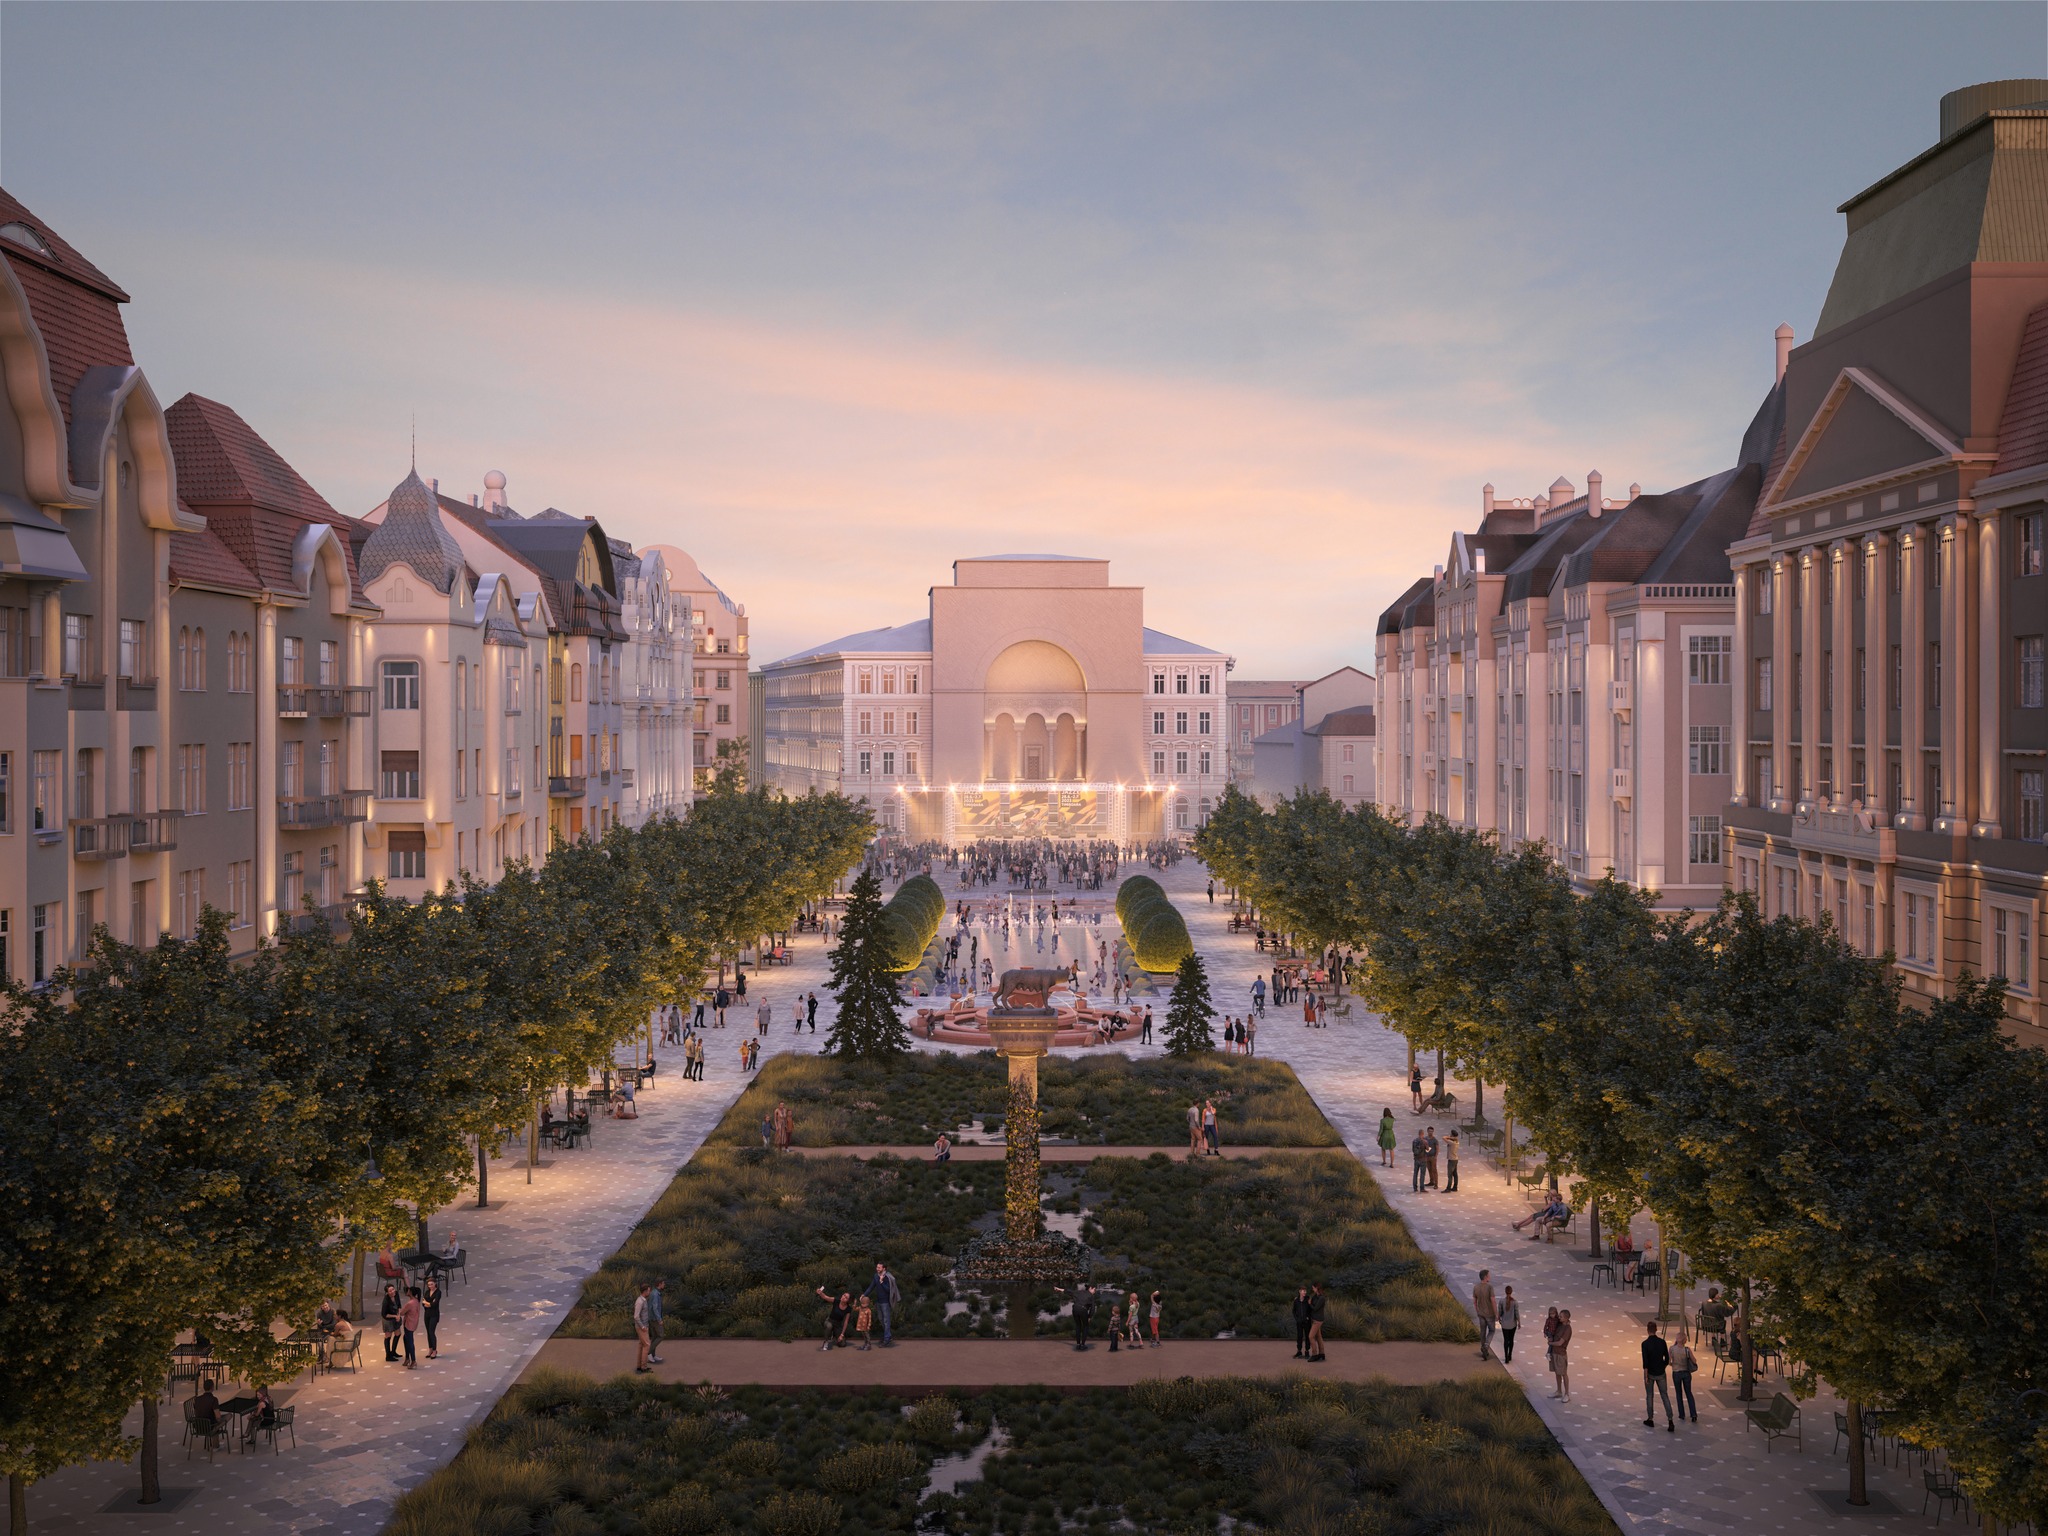 Dominic Fritz: Avem câștigător la concursul internațional de soluții arhitecturale pentru Piața Victoriei